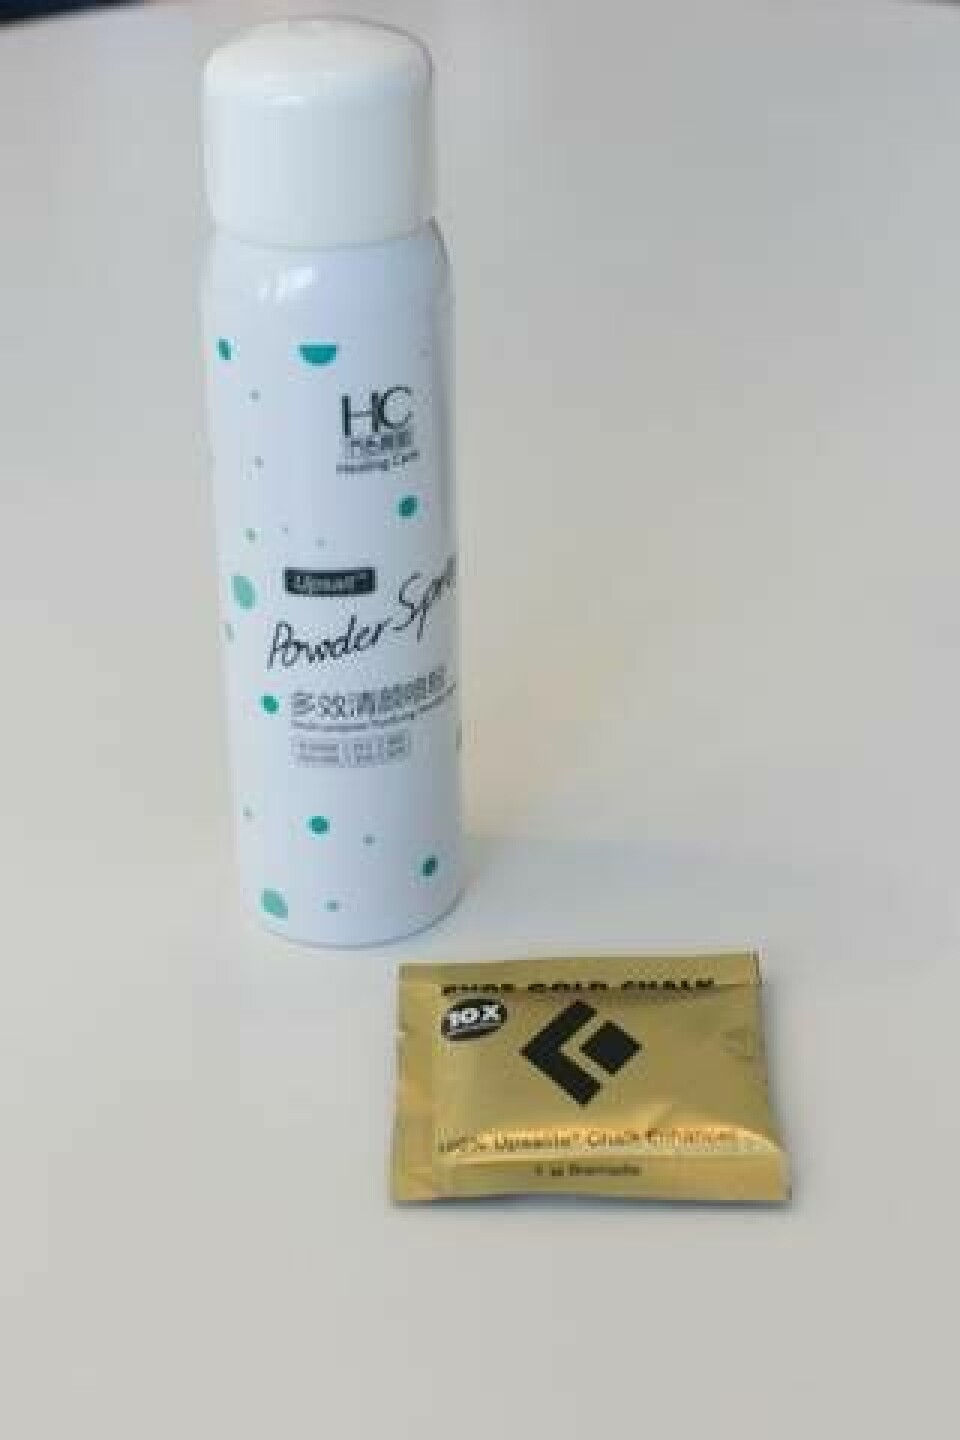 De första produkterna på marknaden med upsalite är en sprej som kan användas i ansiktet eller som torrschampo och ett klätterpulver. Foto: Ania Obminska